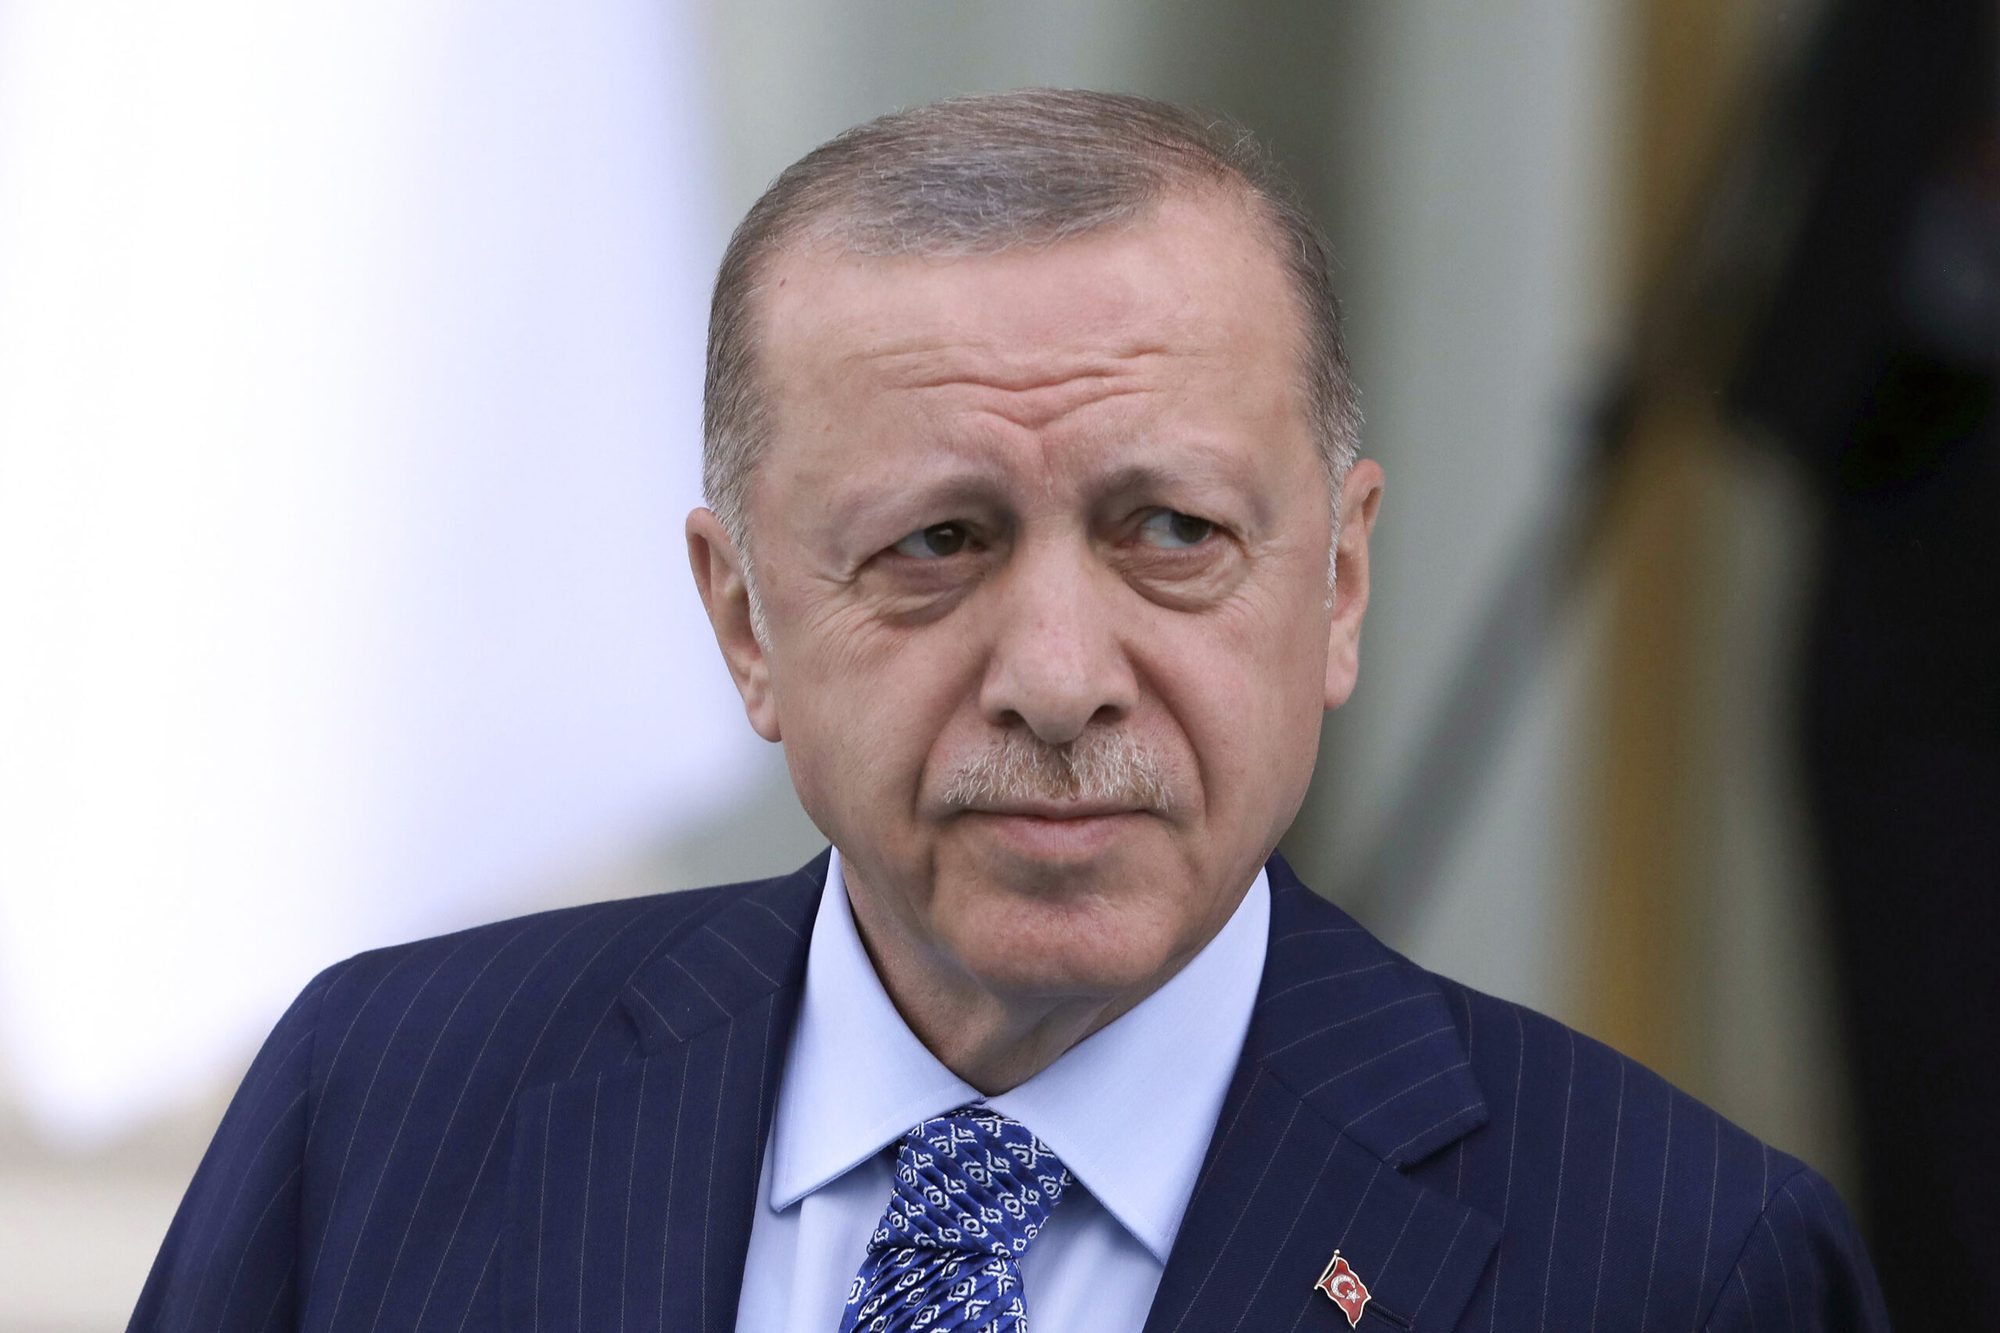 Mỏ đất hiếm lớn thứ 2 thế giới lộ diện: Tổng thống Thổ Nhĩ Kỳ tiết lộ mục tiêu khủng  - Ảnh 1.